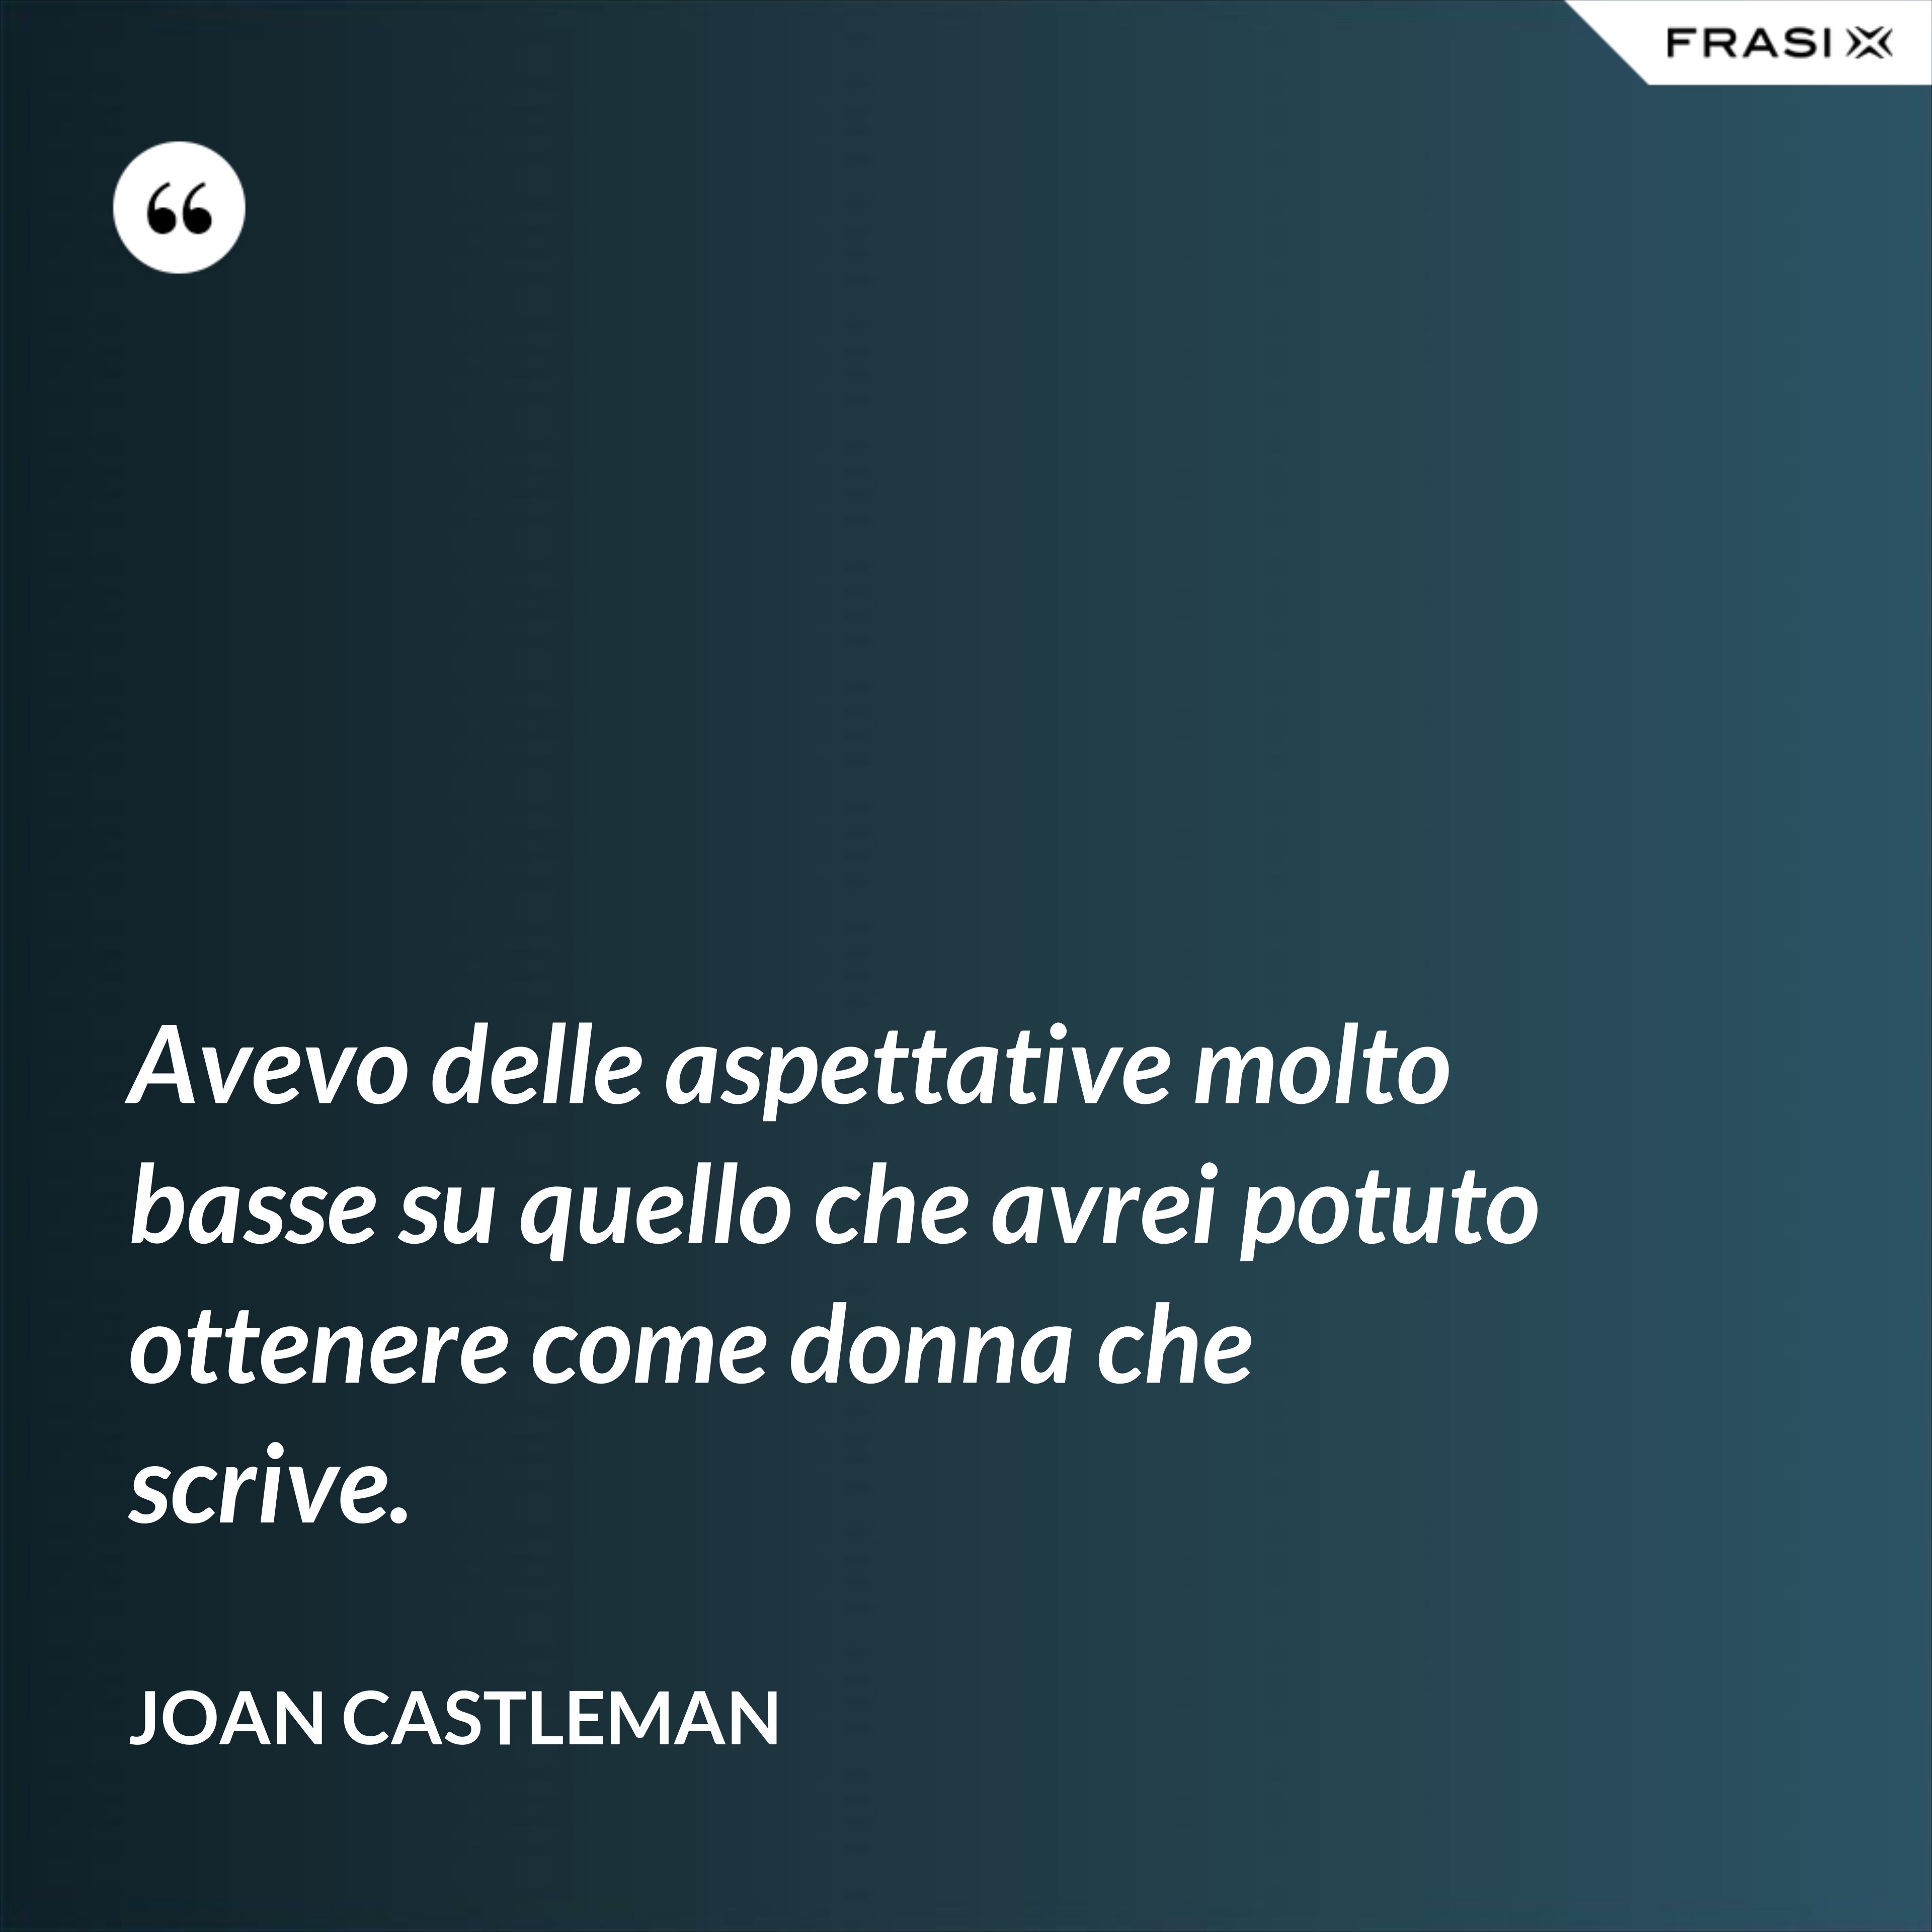 Avevo delle aspettative molto basse su quello che avrei potuto ottenere come donna che scrive. - Joan Castleman